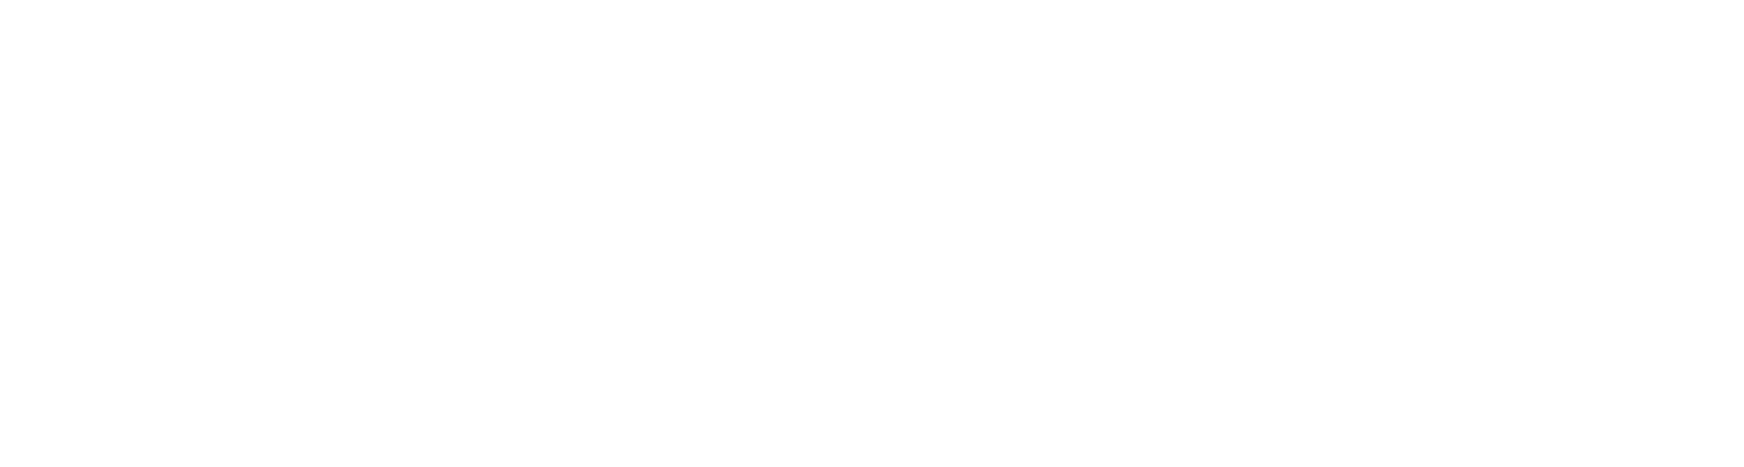 logo_promas